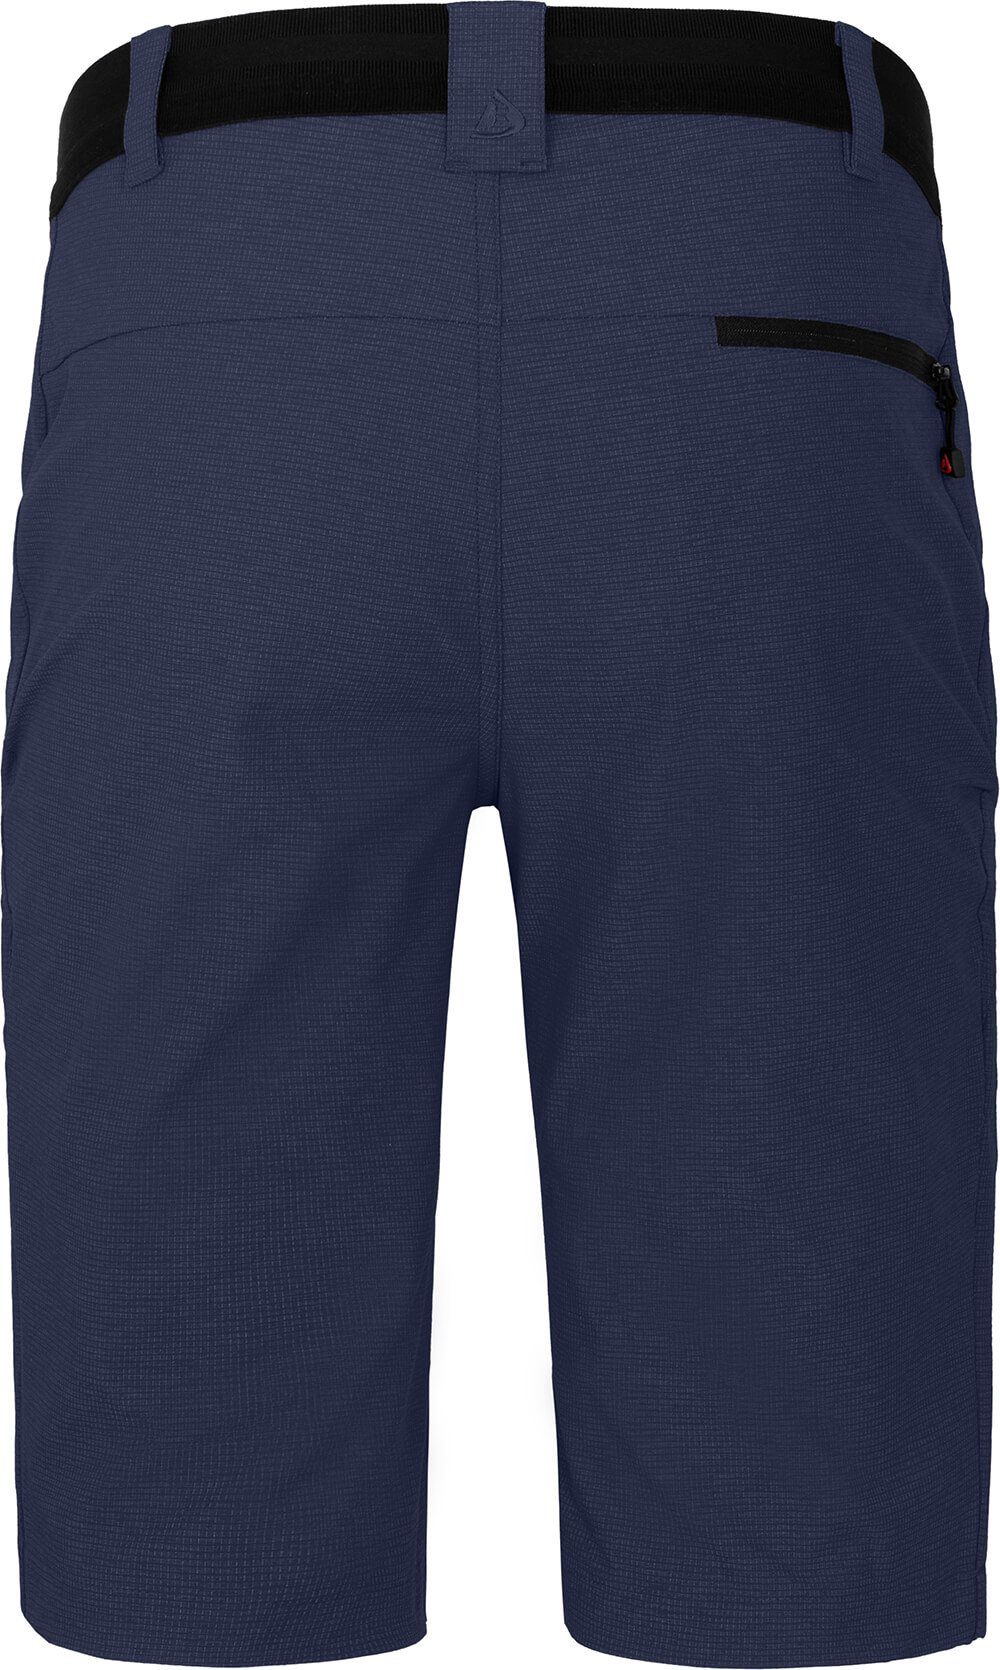 Bermuda Herren Wandershorts, Normalgrößen, LEBIKO elastisch, peacoat robust, Bergson blau Outdoorhose